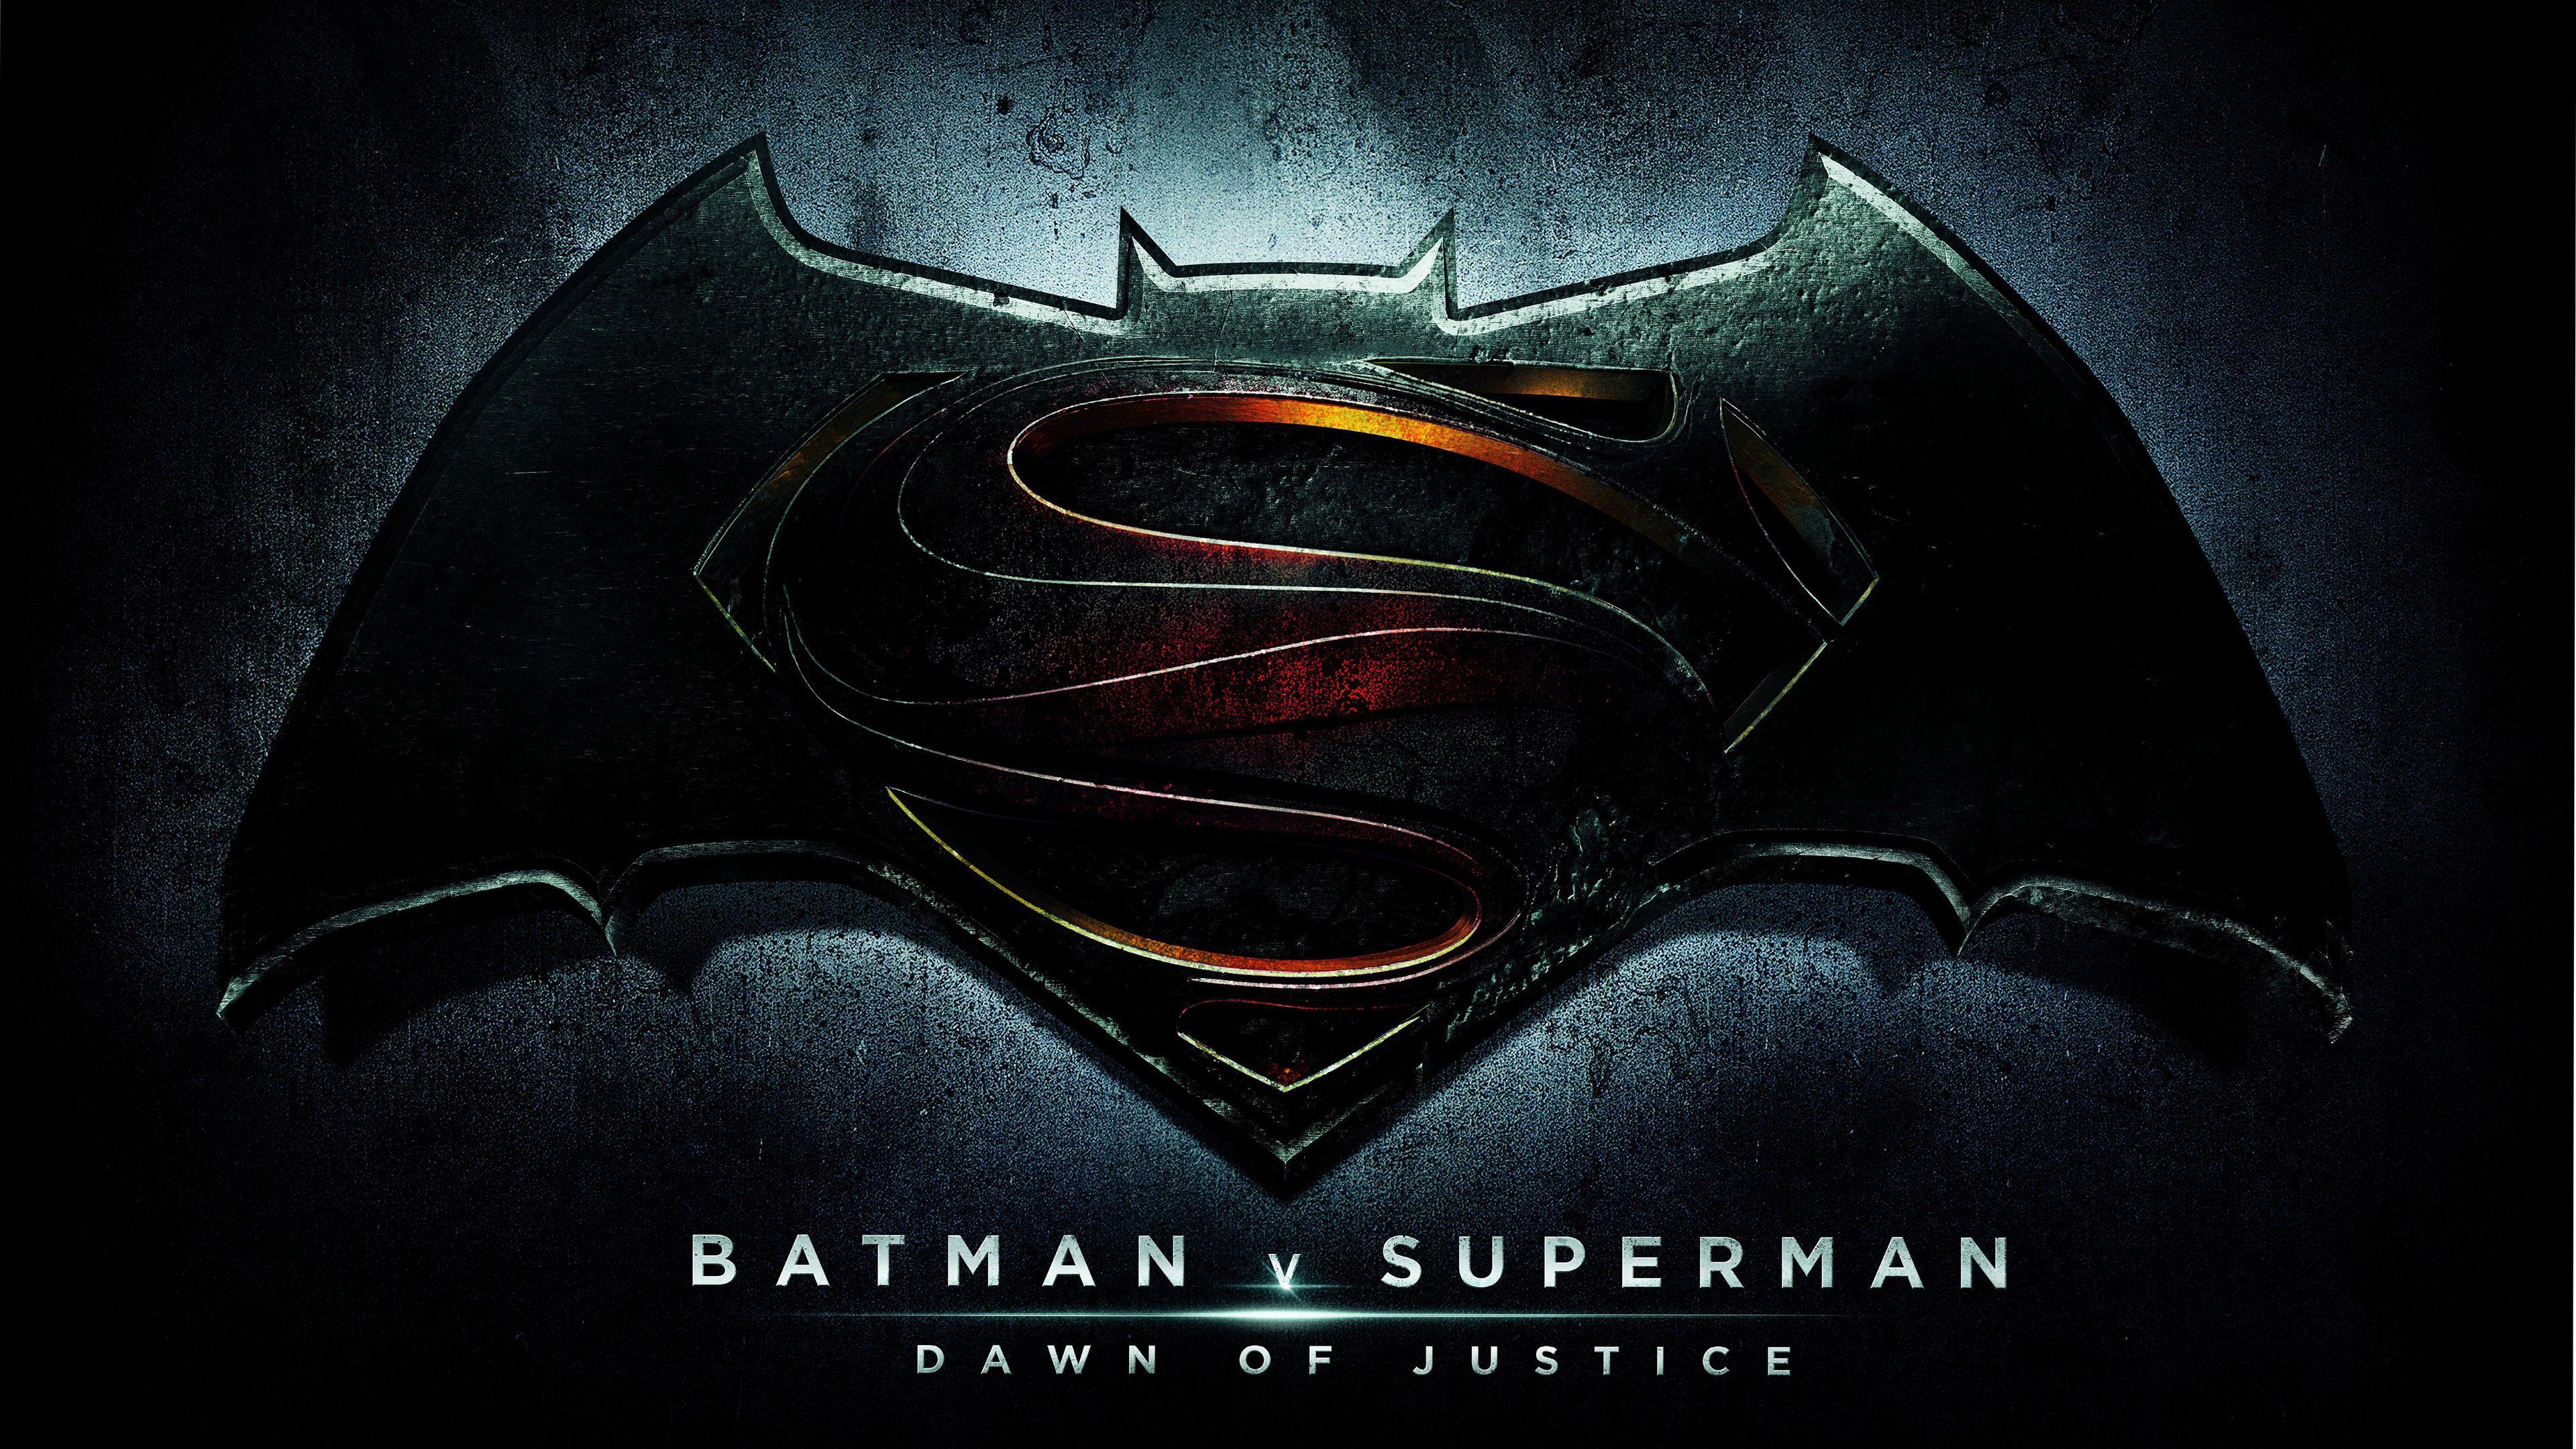 Batman V Superman 4K Wallpapers - Top Free Batman V Superman 4K Backgrounds  - WallpaperAccess